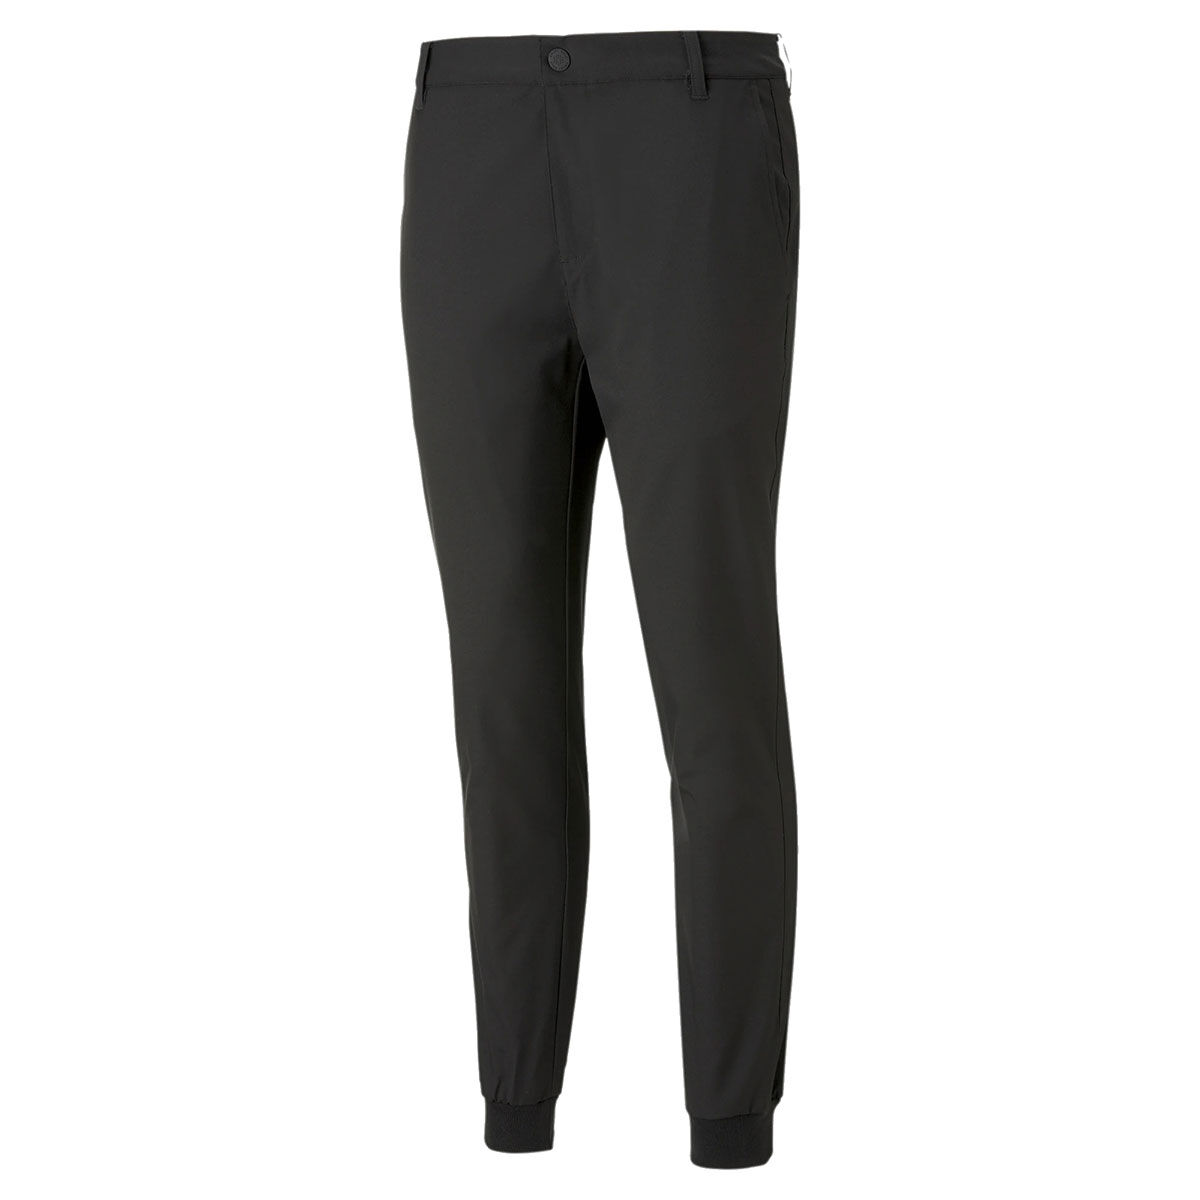 PUMA Golf Trousers - Warm 5 Pocket Pant - Navy Blazer AW23